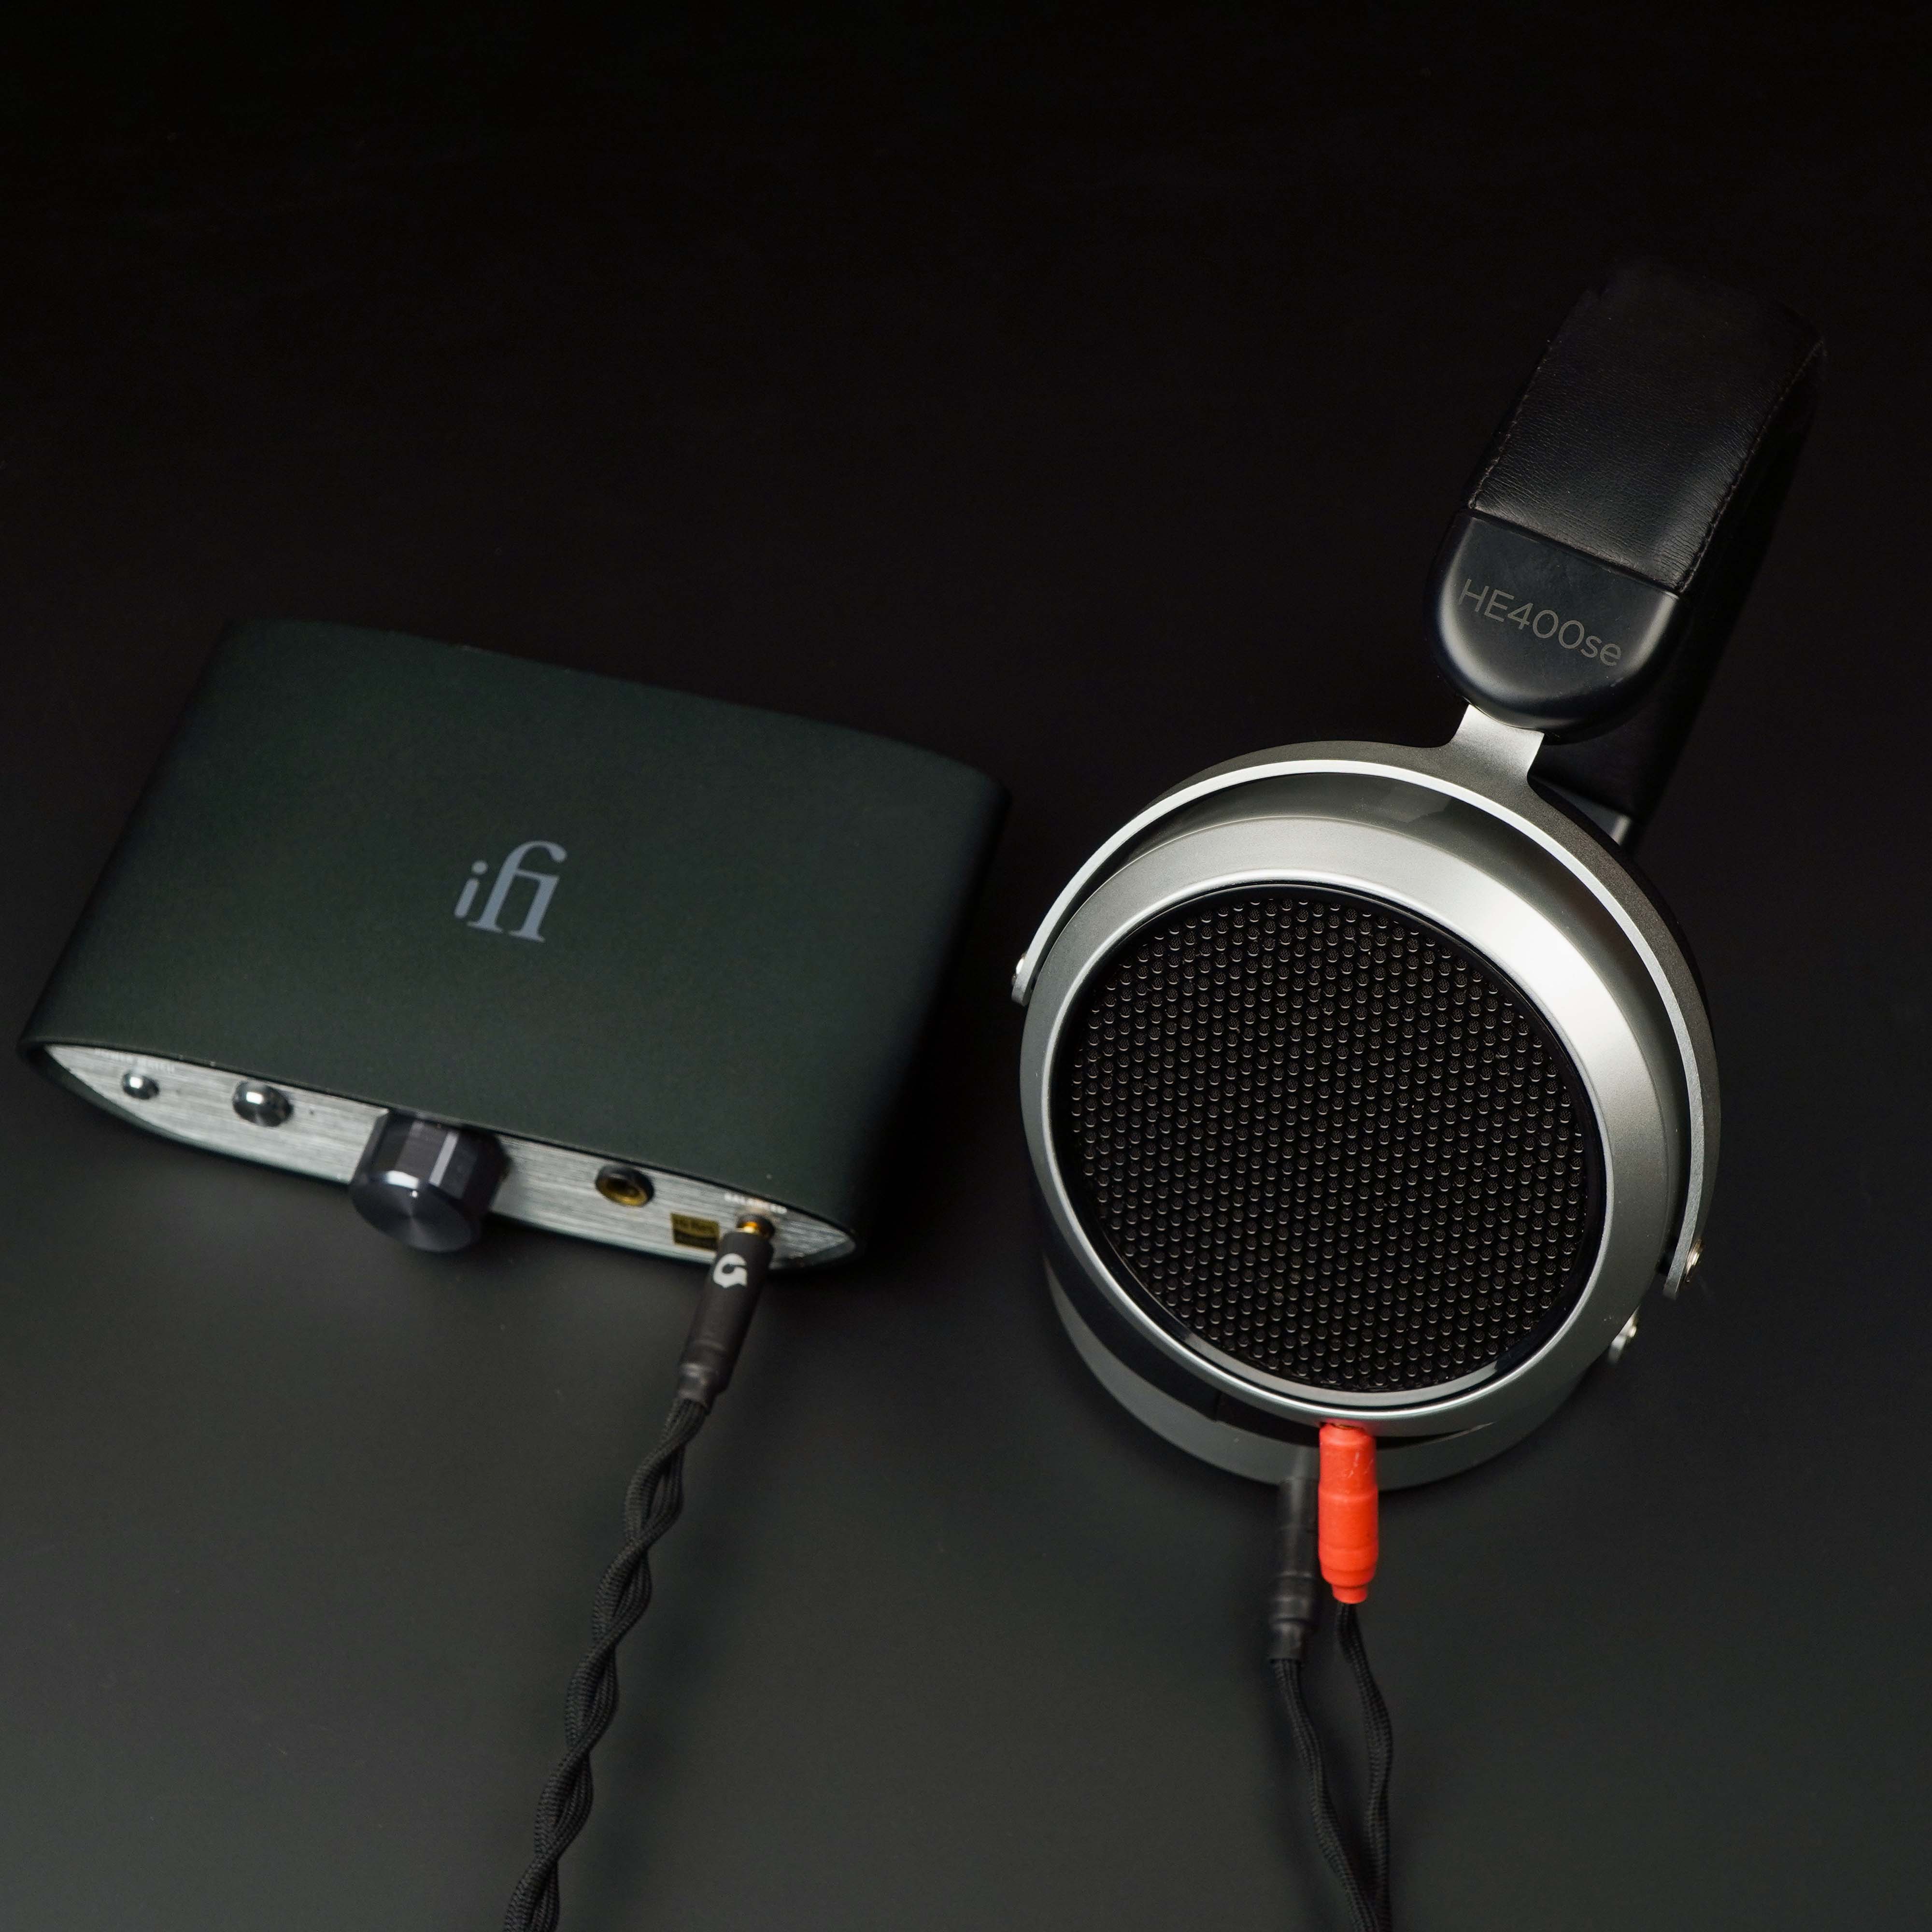 HiFiMAN - HE400se + iFi Audio - ZEN DAC V2 + Tripowin - Granvia (4.4mm)